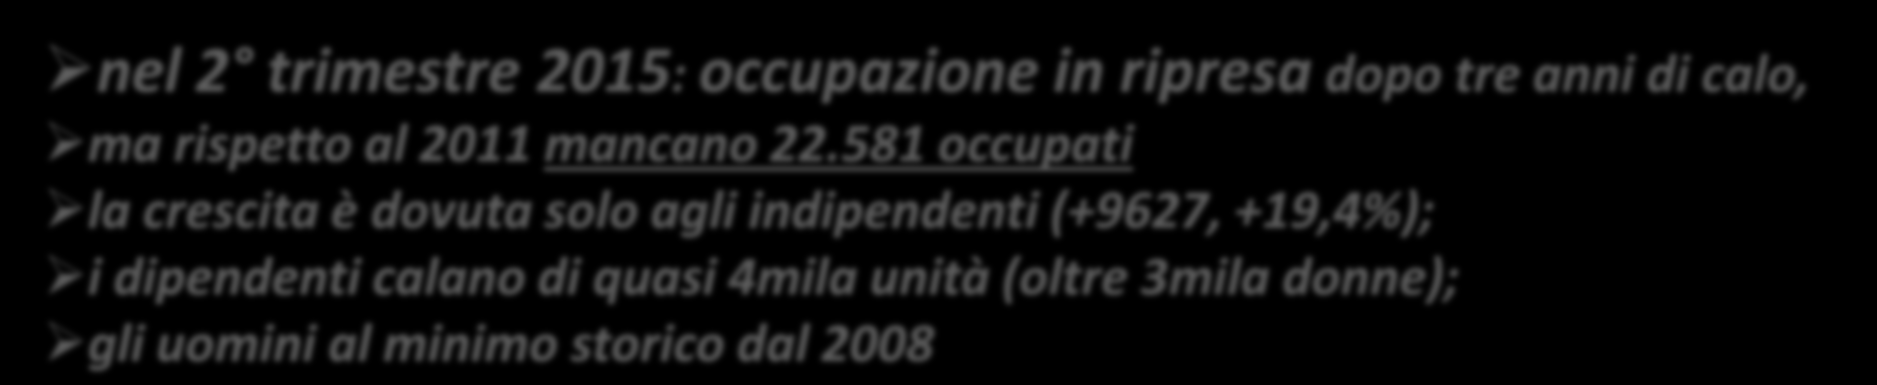 Occupazione nel turismo in Liguria (Fonte: ISTAT, anno 2014 e 2 T 15) 129.900 occupati (dip+ind) in -6.9% sul 2013 403.874 voucher venduti, 8.236 lavoratori impegnati +16.